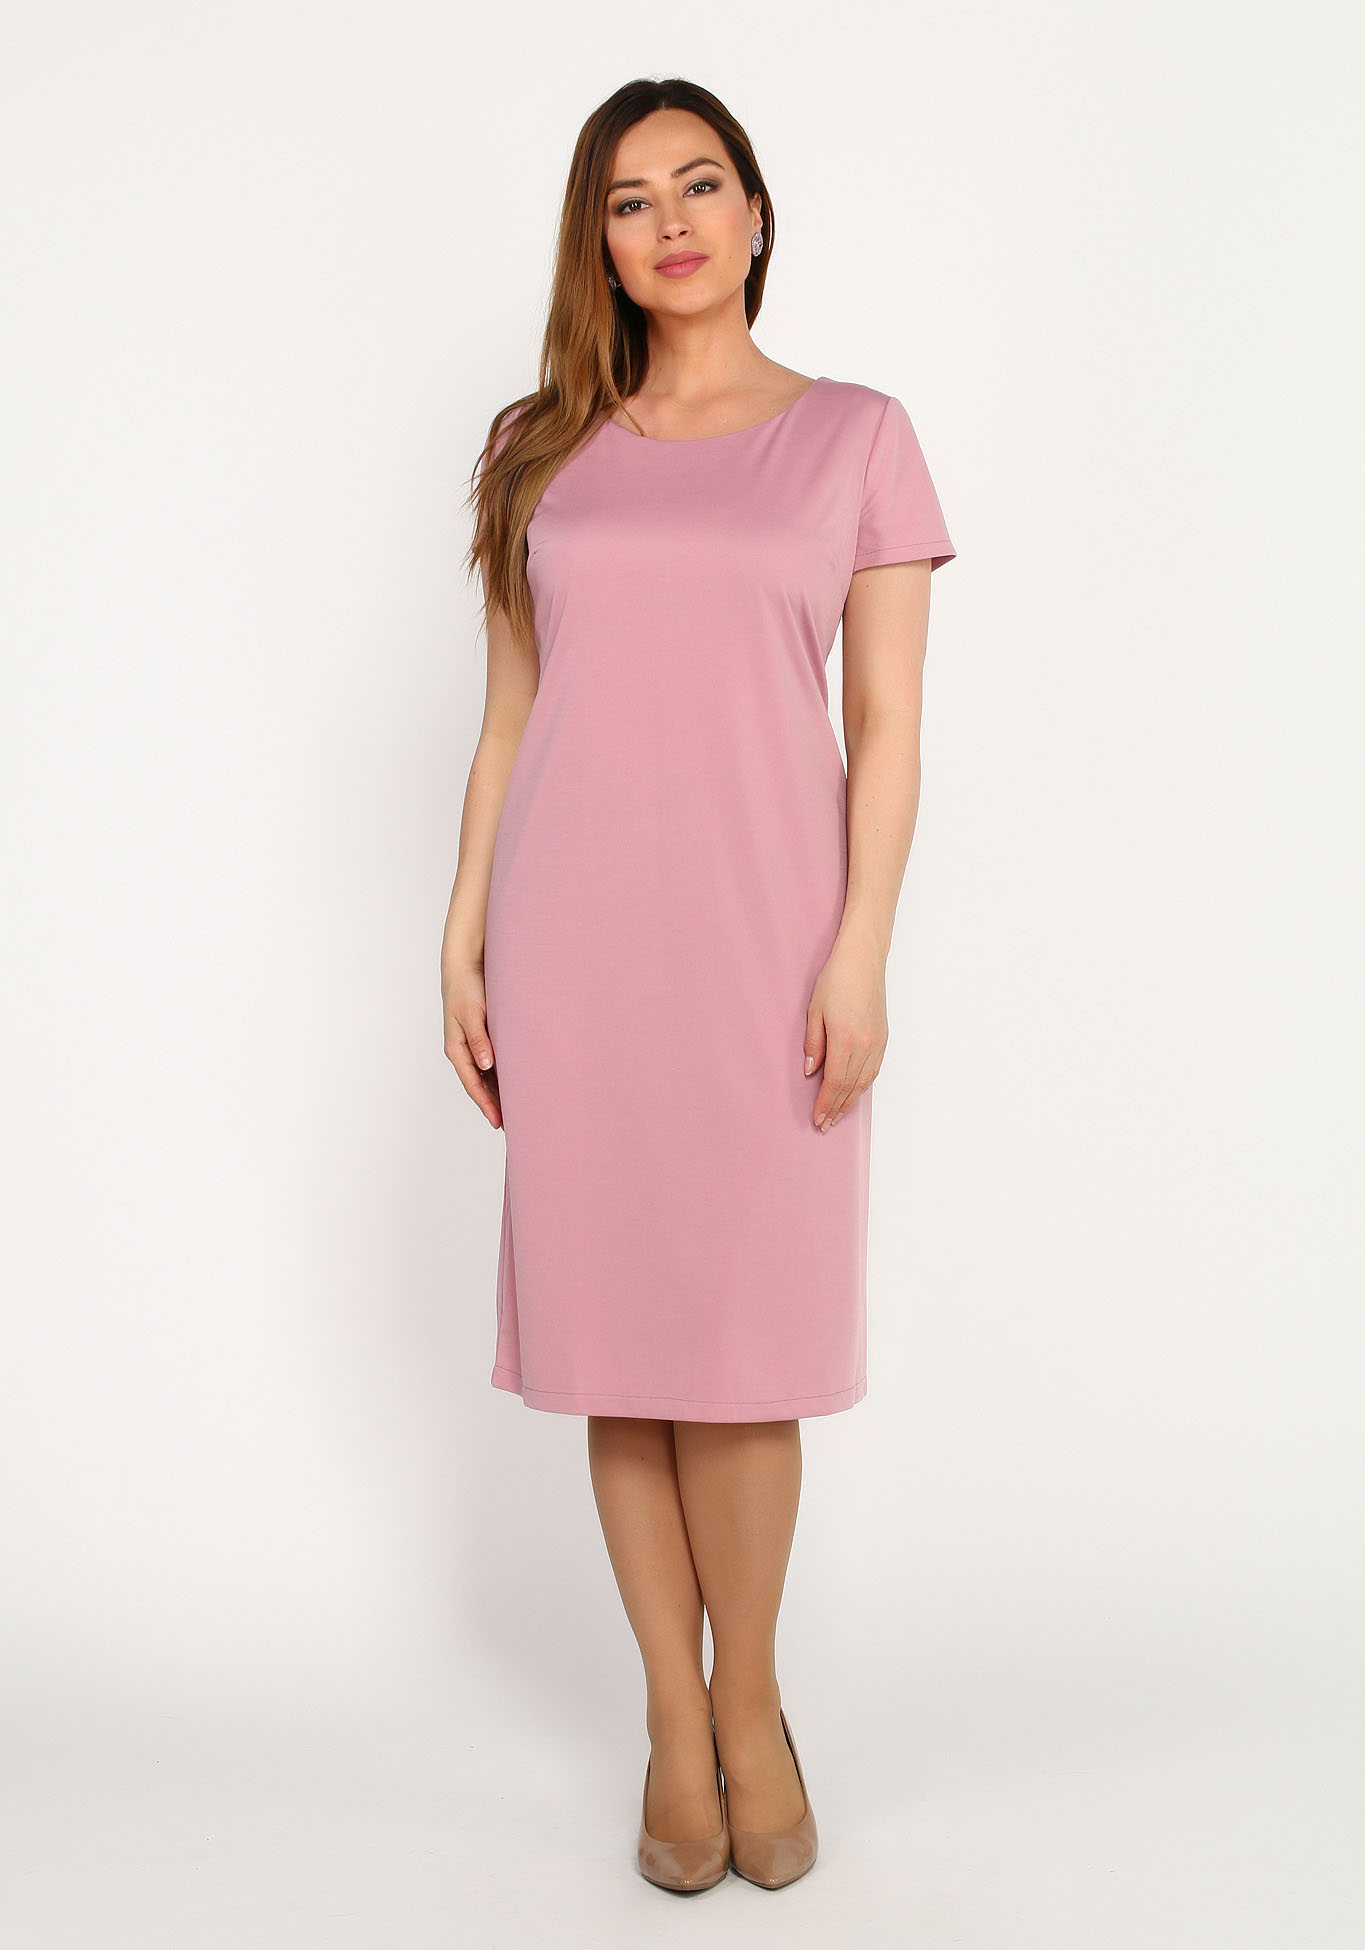 Комплект: платье и кружевная накидка Bel Fiore, размер 48, цвет розовый - фото 1